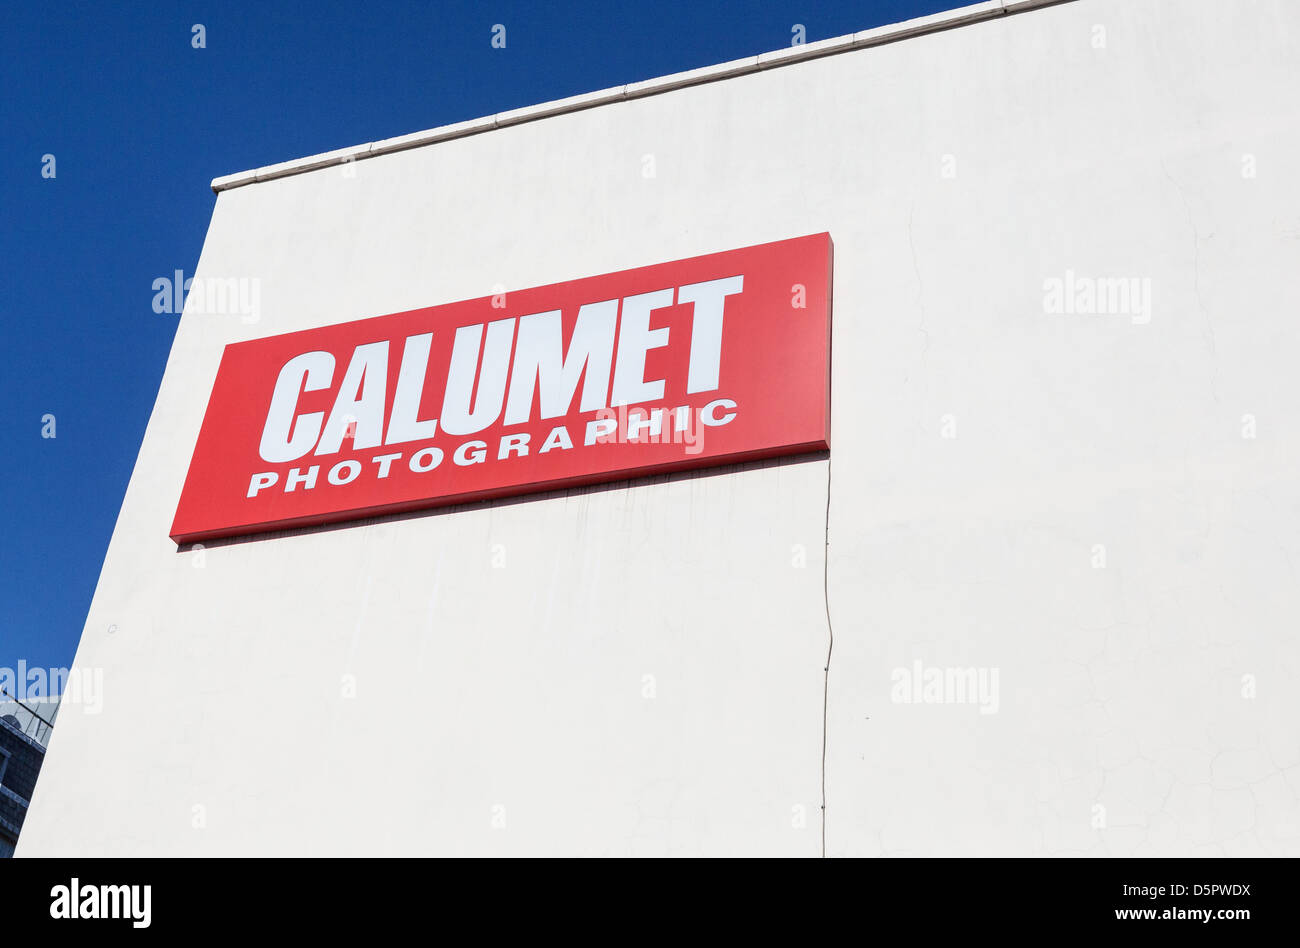 Calumet Photographic speichern Zeichen, London, England, UK Stockfoto